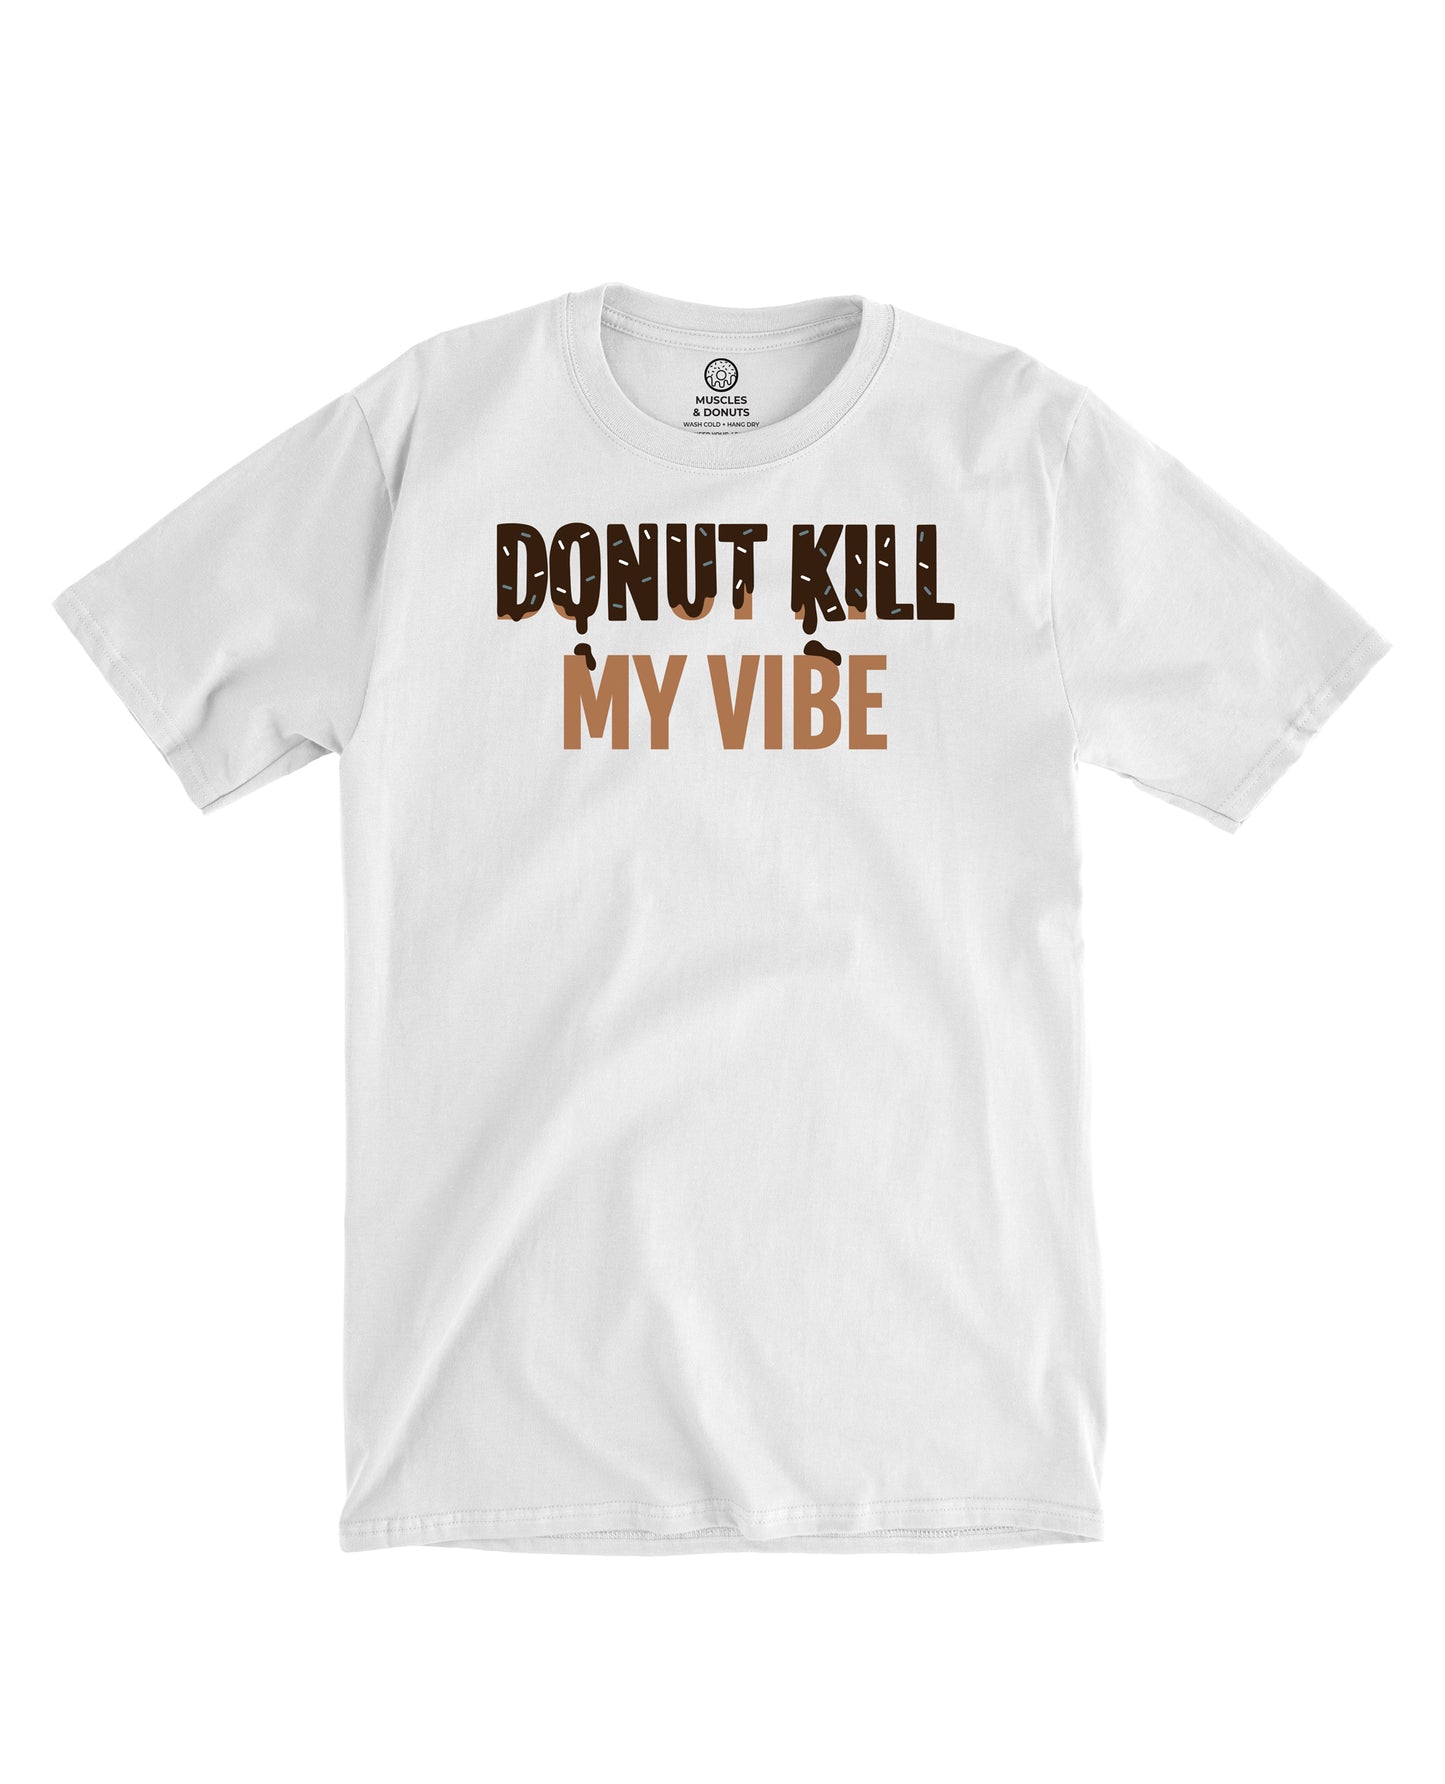 Donut Kill My Vibe - White Tee